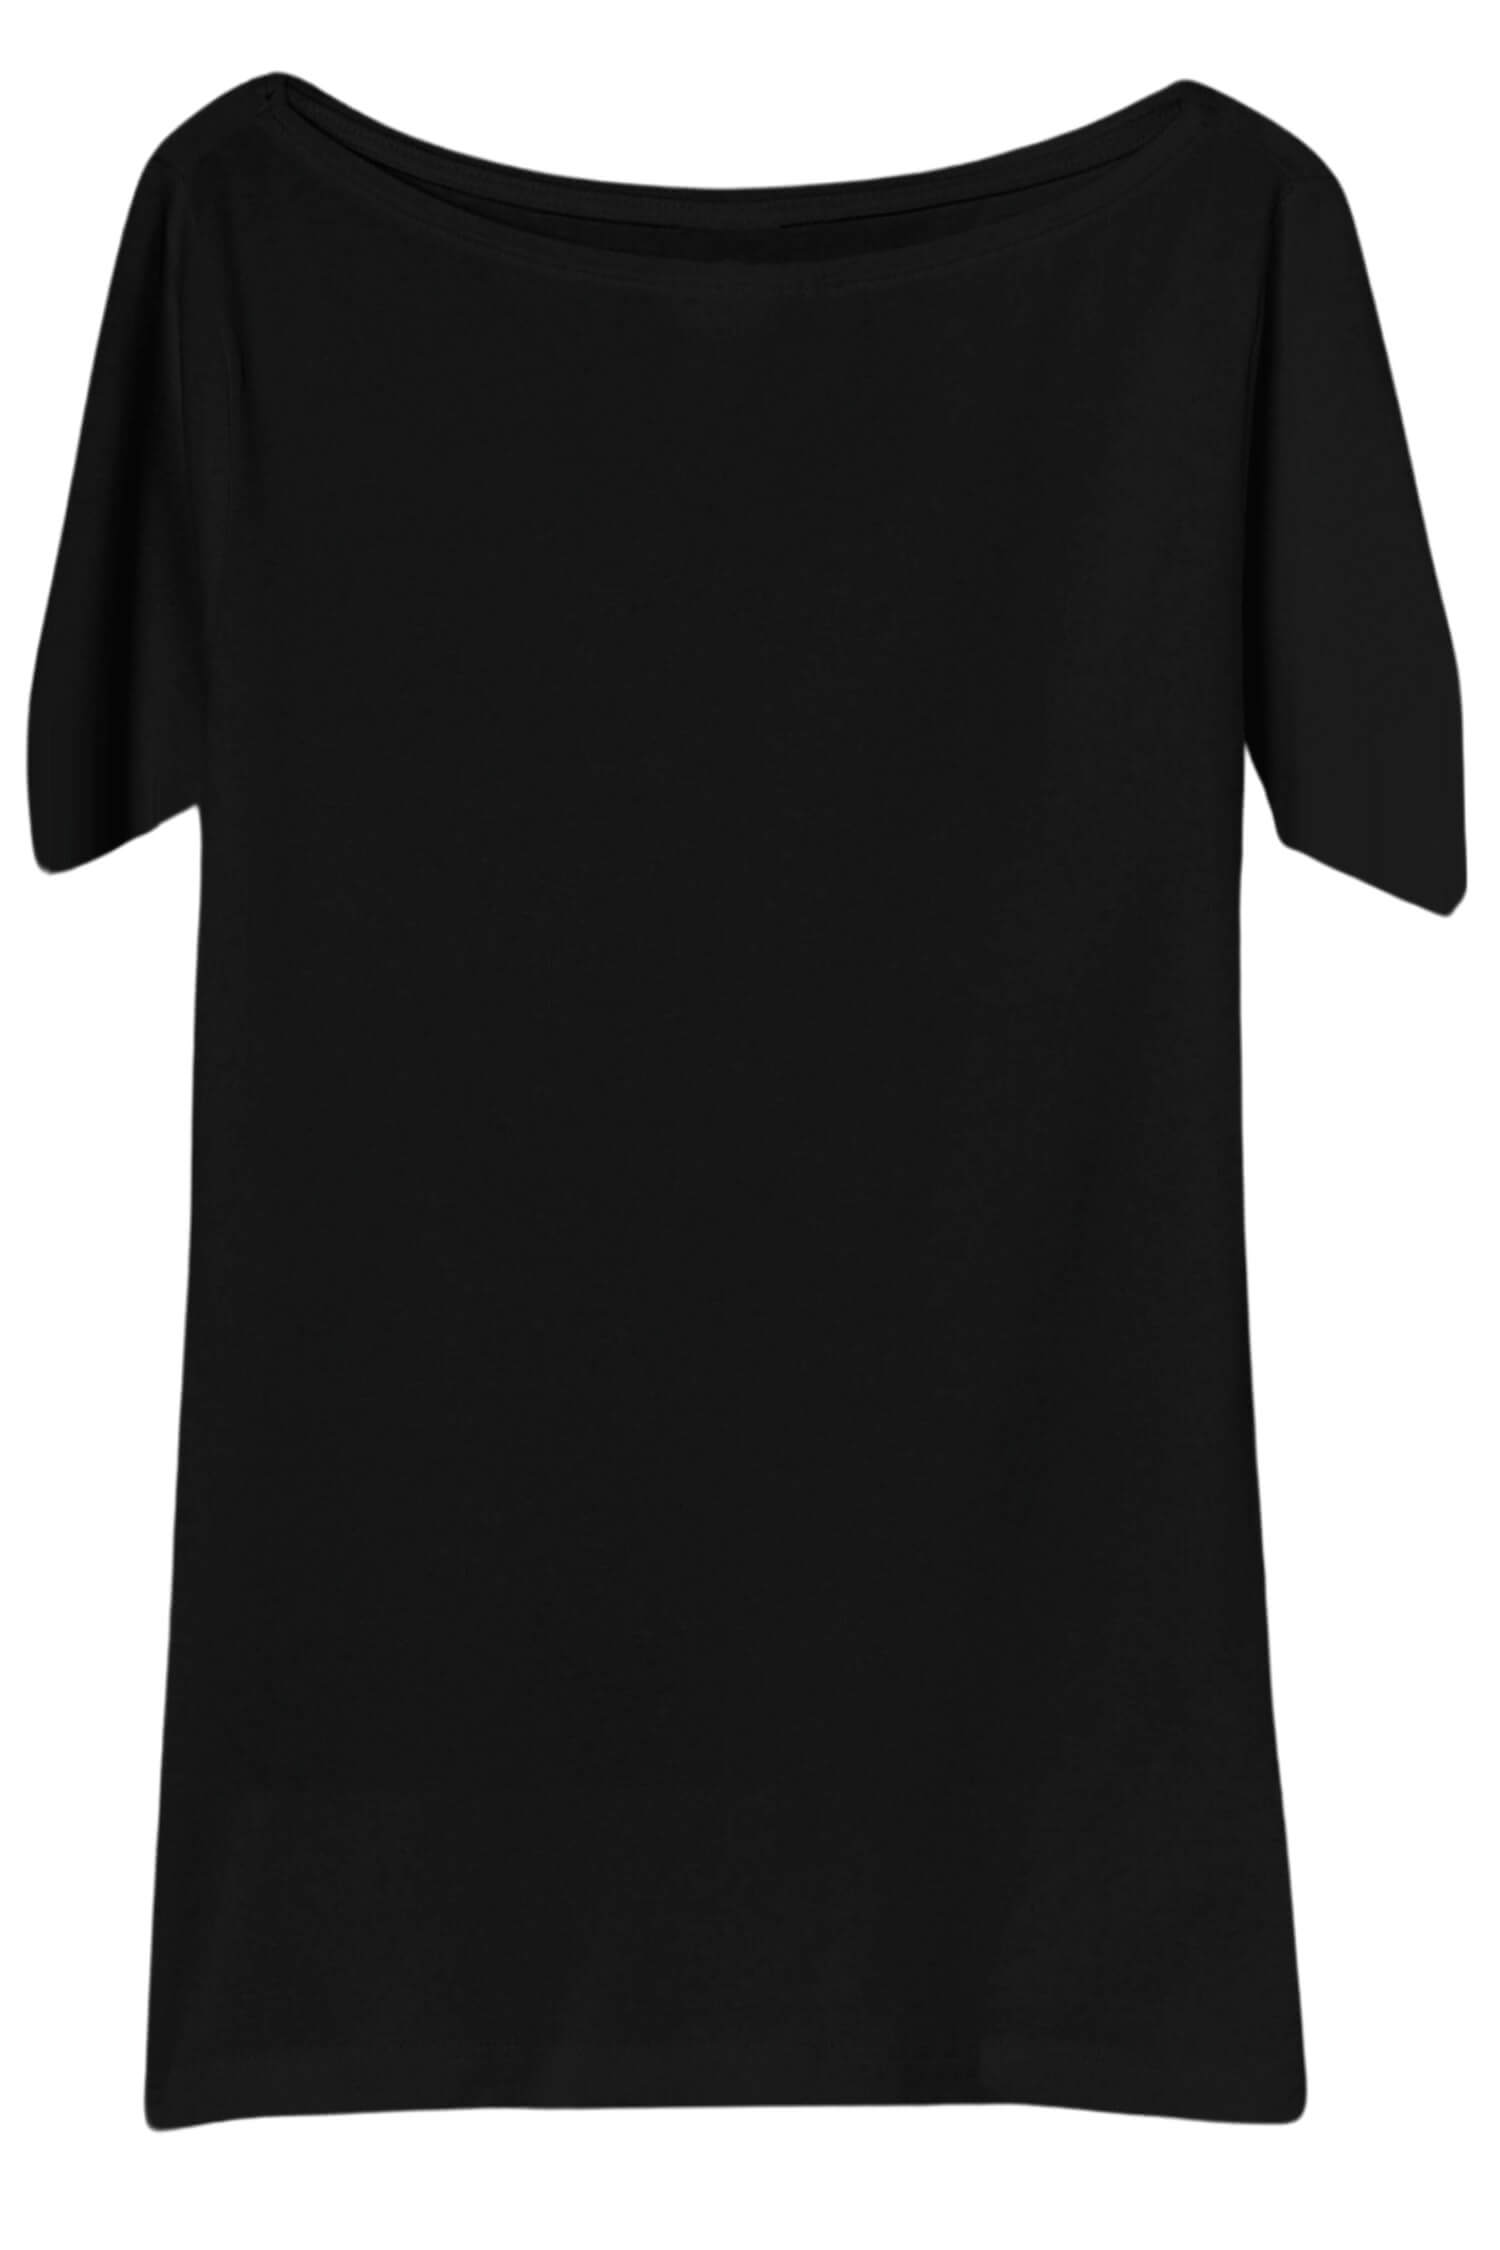 Danica dámské tričko s krátkým rukávem TSK-1005 XL černá